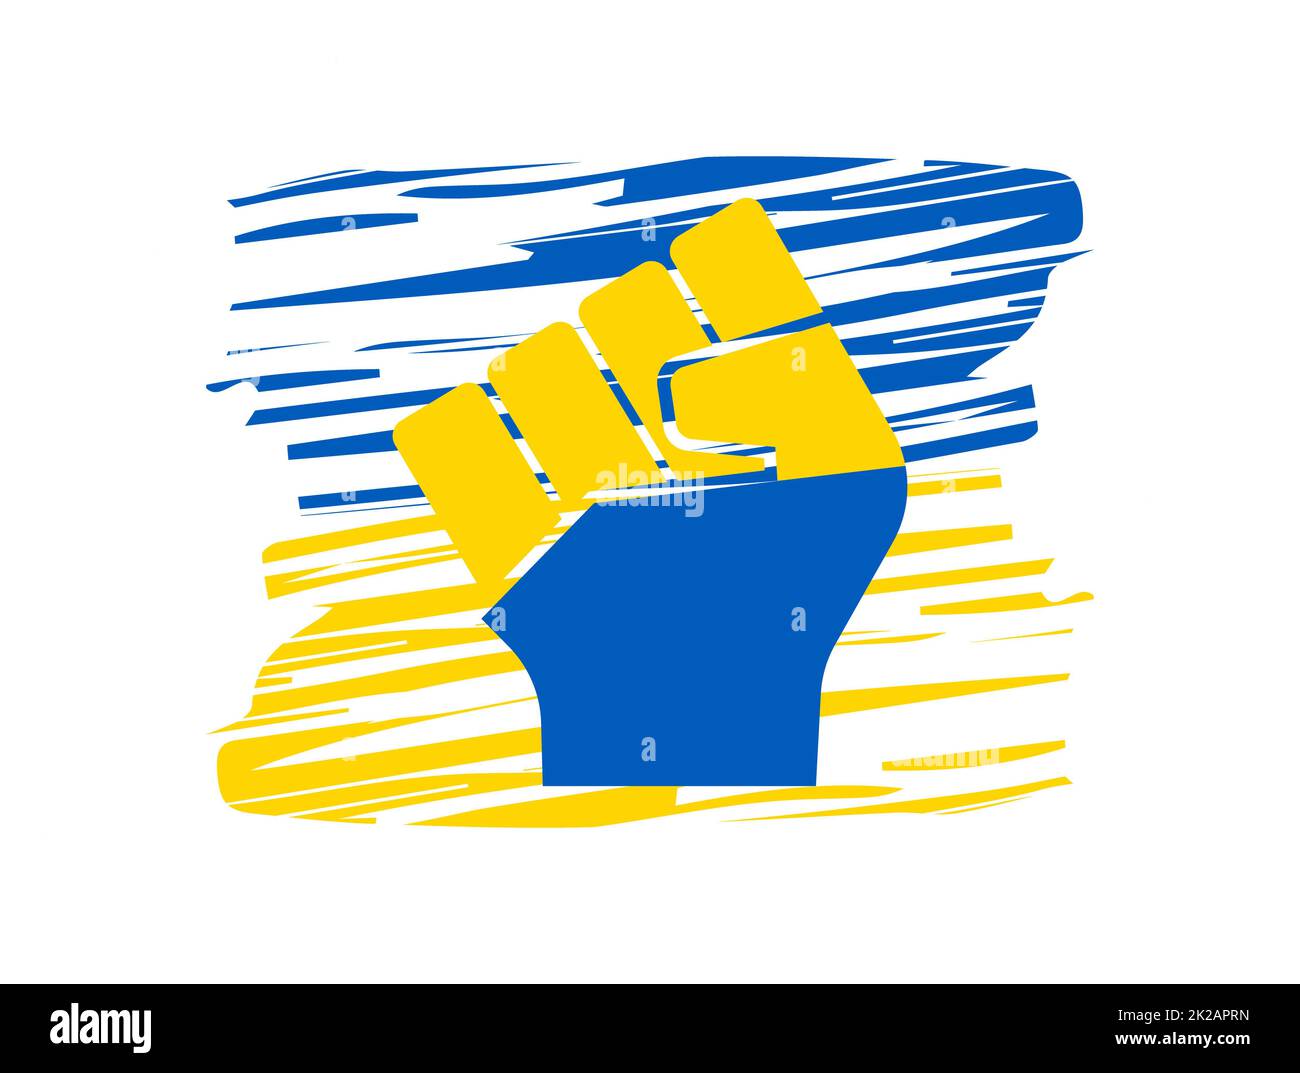 Die menschliche Faust ist in der Nationalflagge auf dem Hintergrund der ukrainischen Flagge gefärbt. Der Begriff des Widerstands. Beenden Sie den Krieg zwischen Russland und der Ukraine. Solidarität mit der Ukraine und den ukrainischen Patrioten. Bete für die Ukraine. Stockfoto